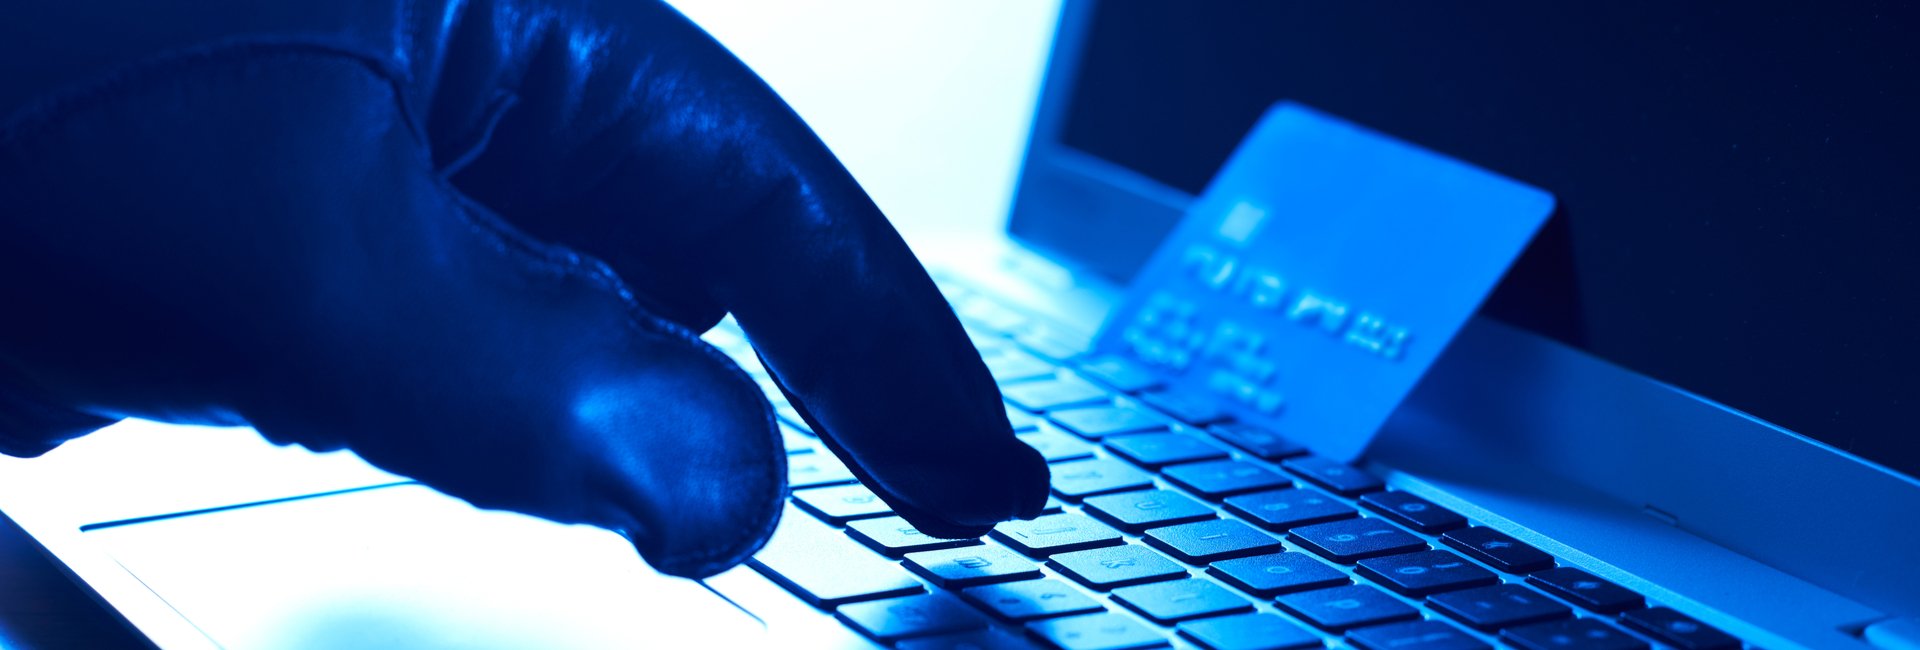 Die Gefahr Cyberbetrug: So schützen sich Unternehmen richtig